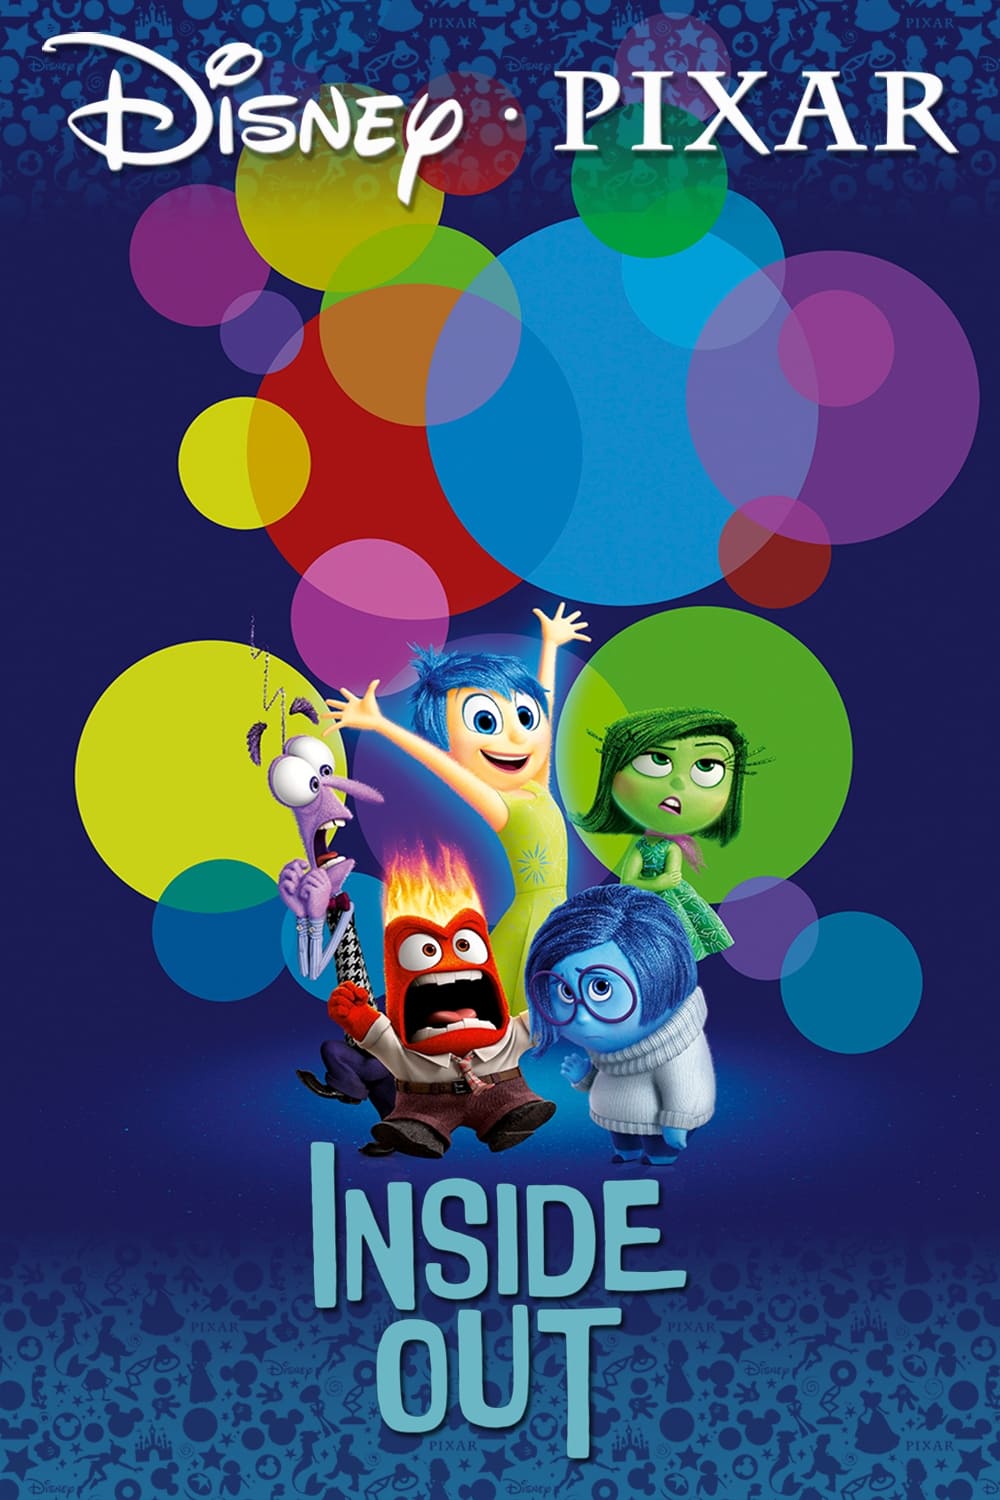 ดูหนังออนไลน์ฟรี Inside Out 2015 มหัศจรรย์อารมณ์อลเวง moviehdfree